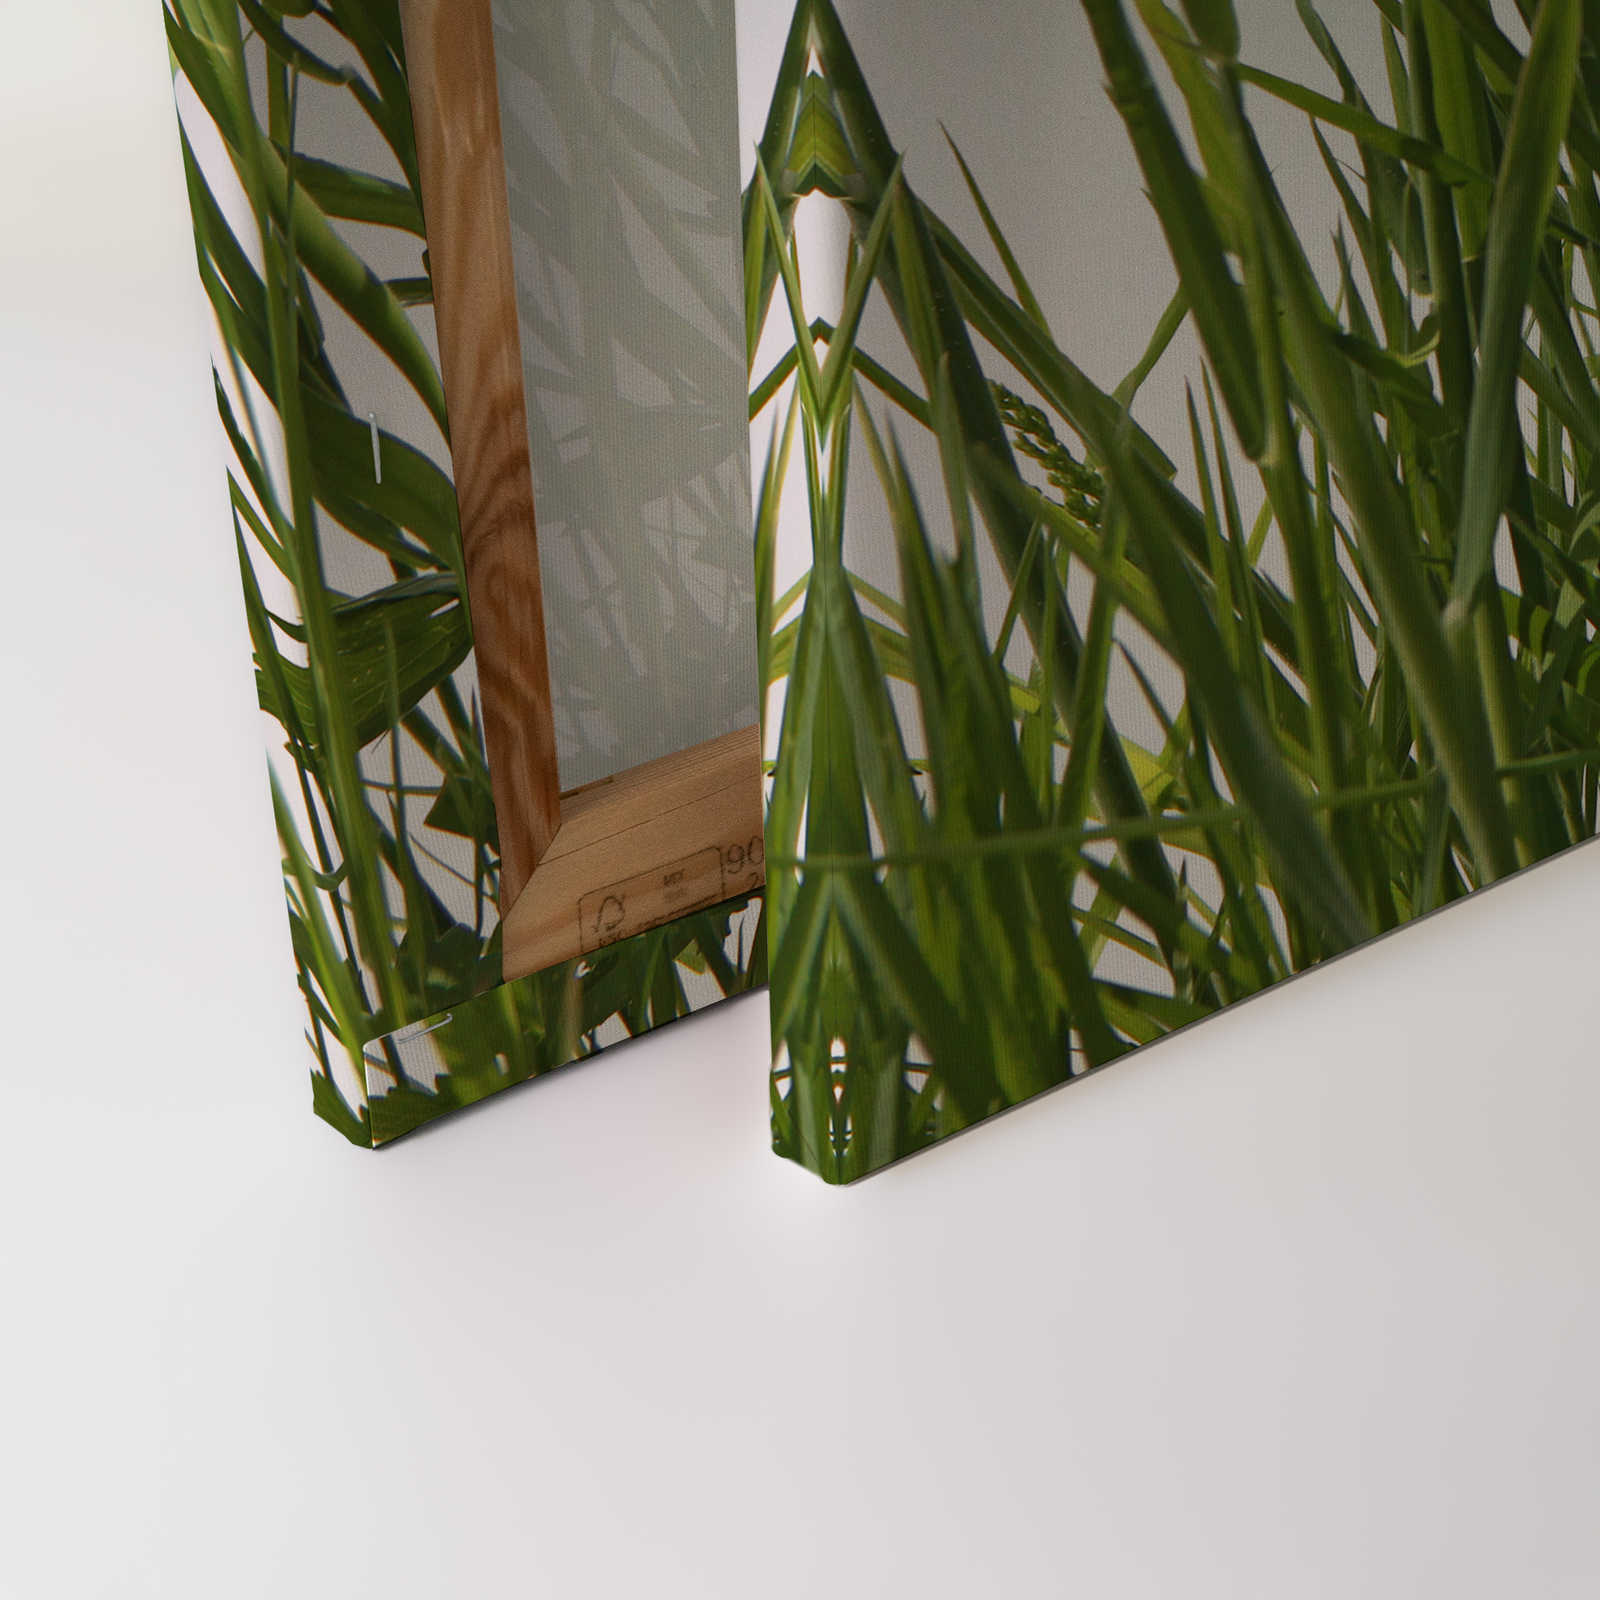             Leinwandbild Gräser Detail mit weißem Hintergrund – 1,20 m x 0,80 m
        